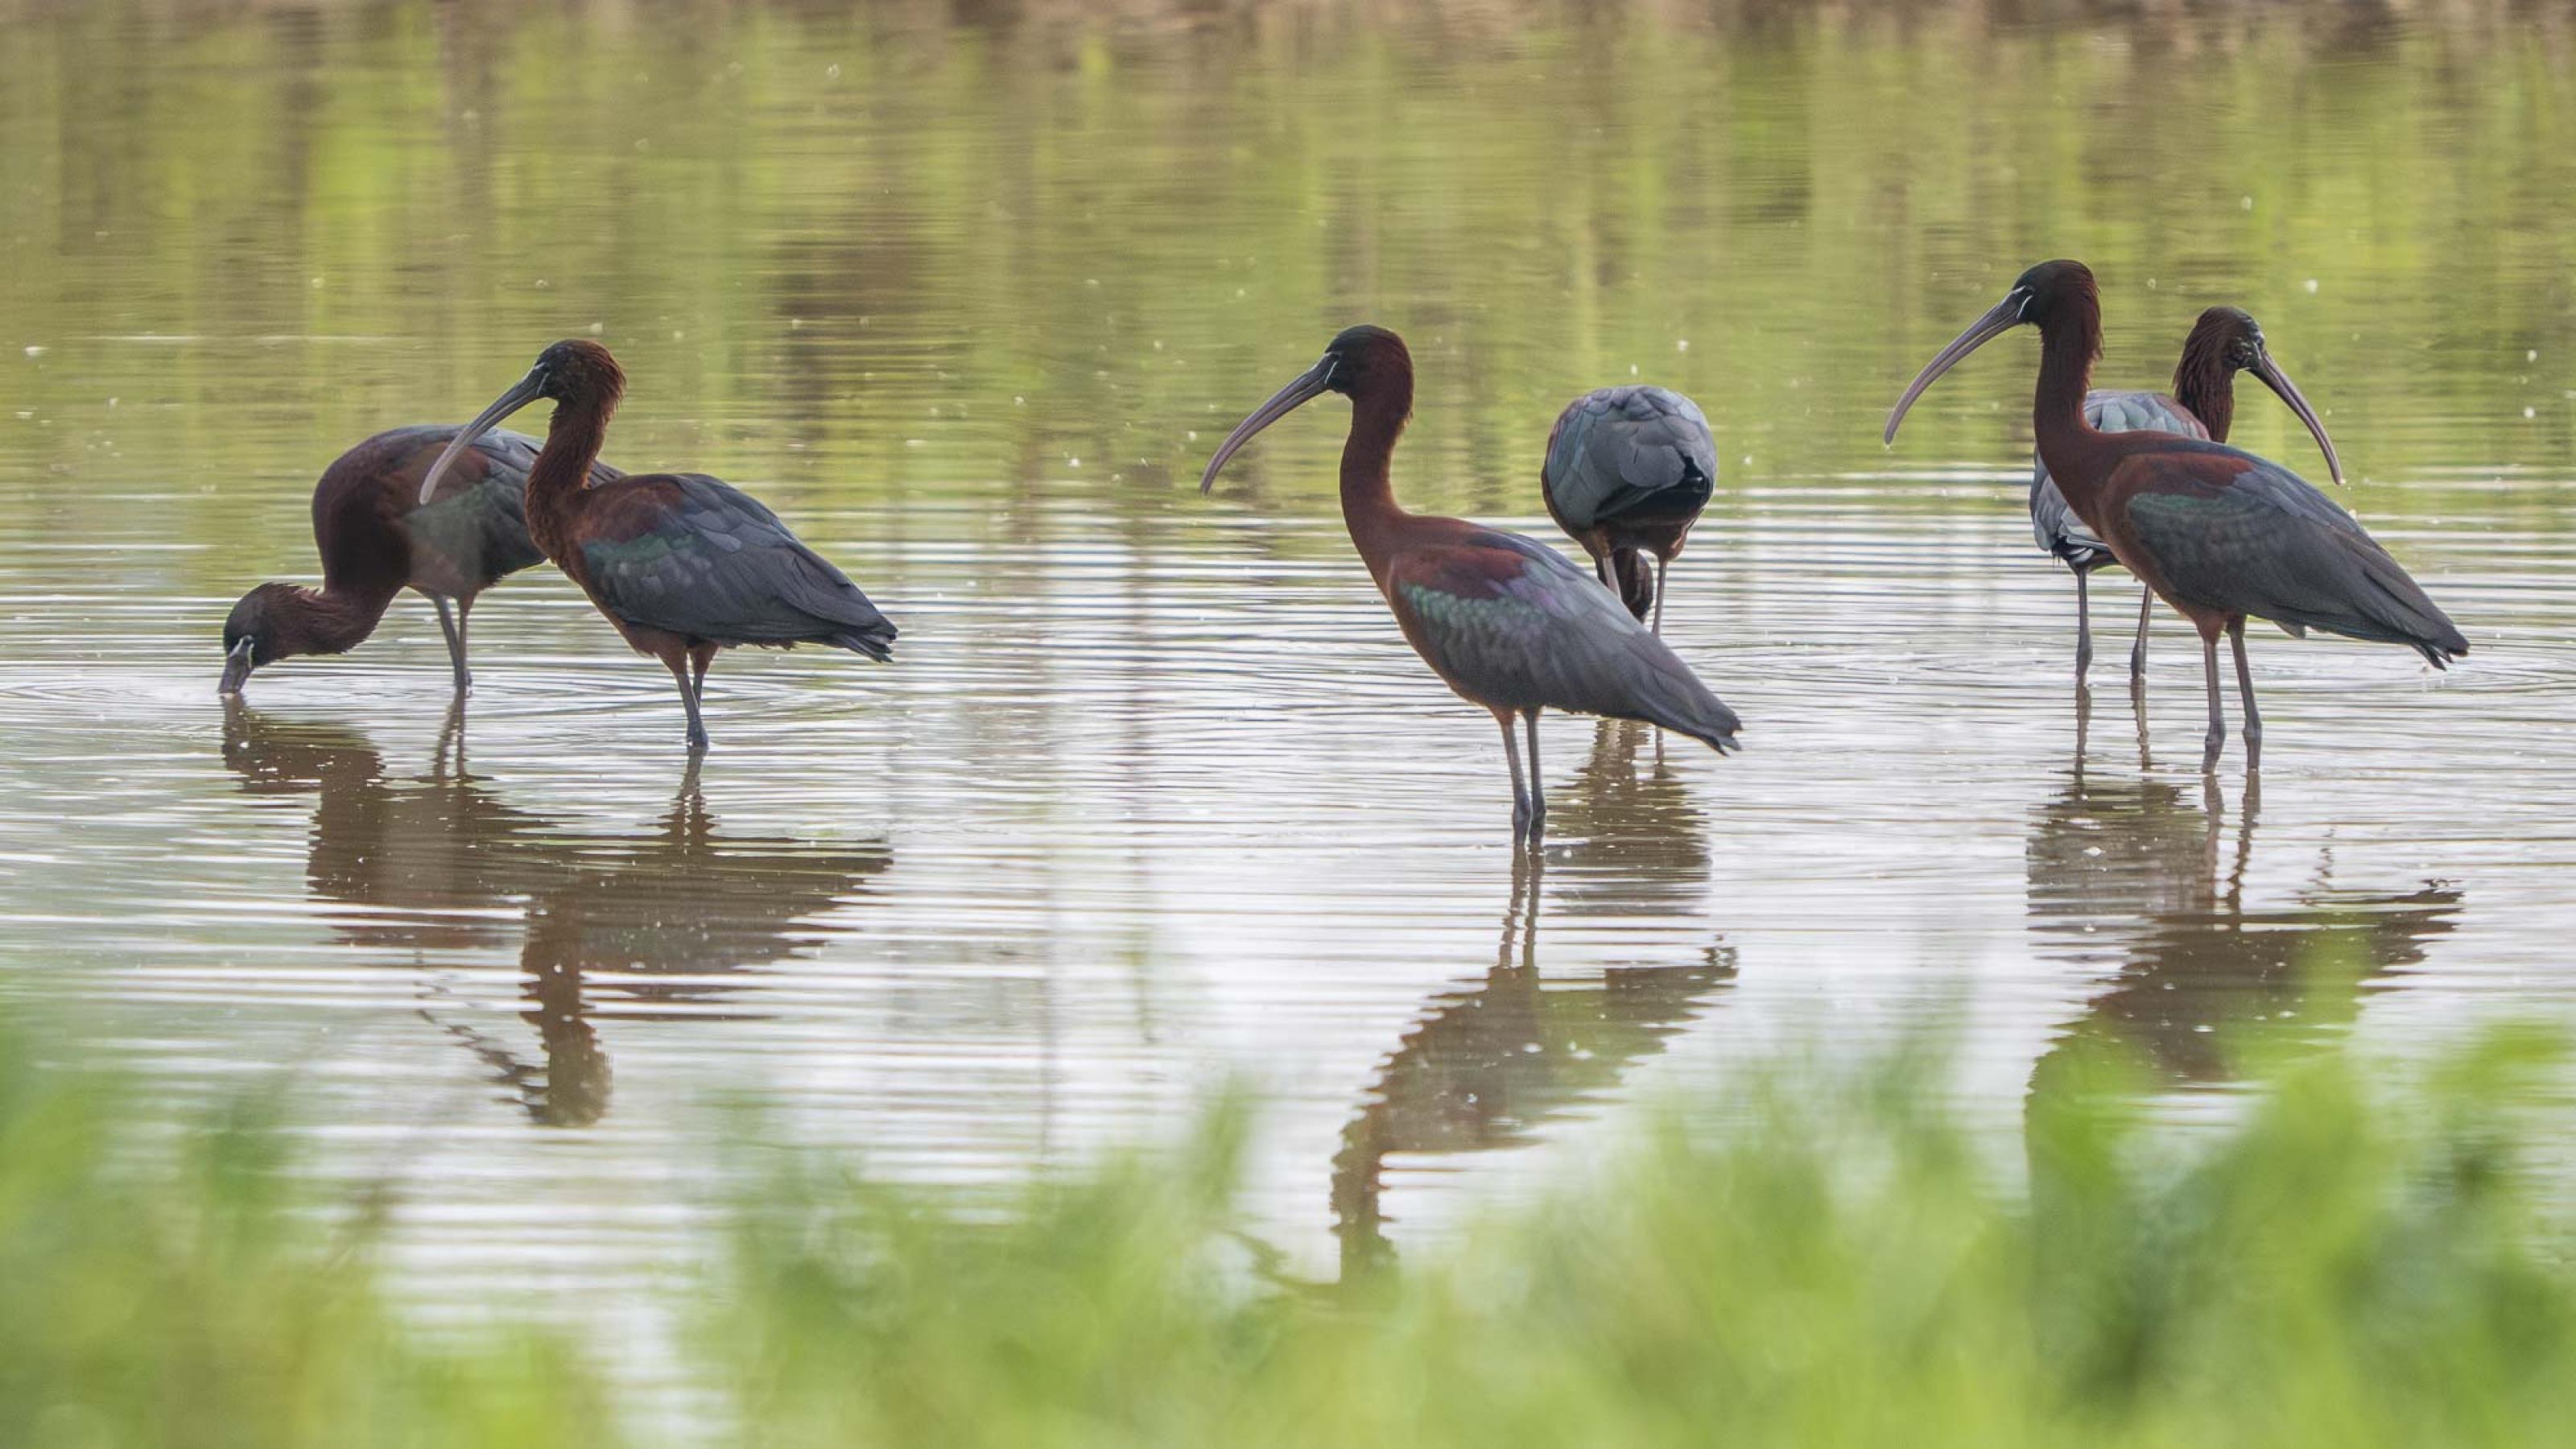 Sechs braune, knapp storchengroße Vögel mit gebogenen Schnäbeln stehen im flachen Wasser einer Flussaue